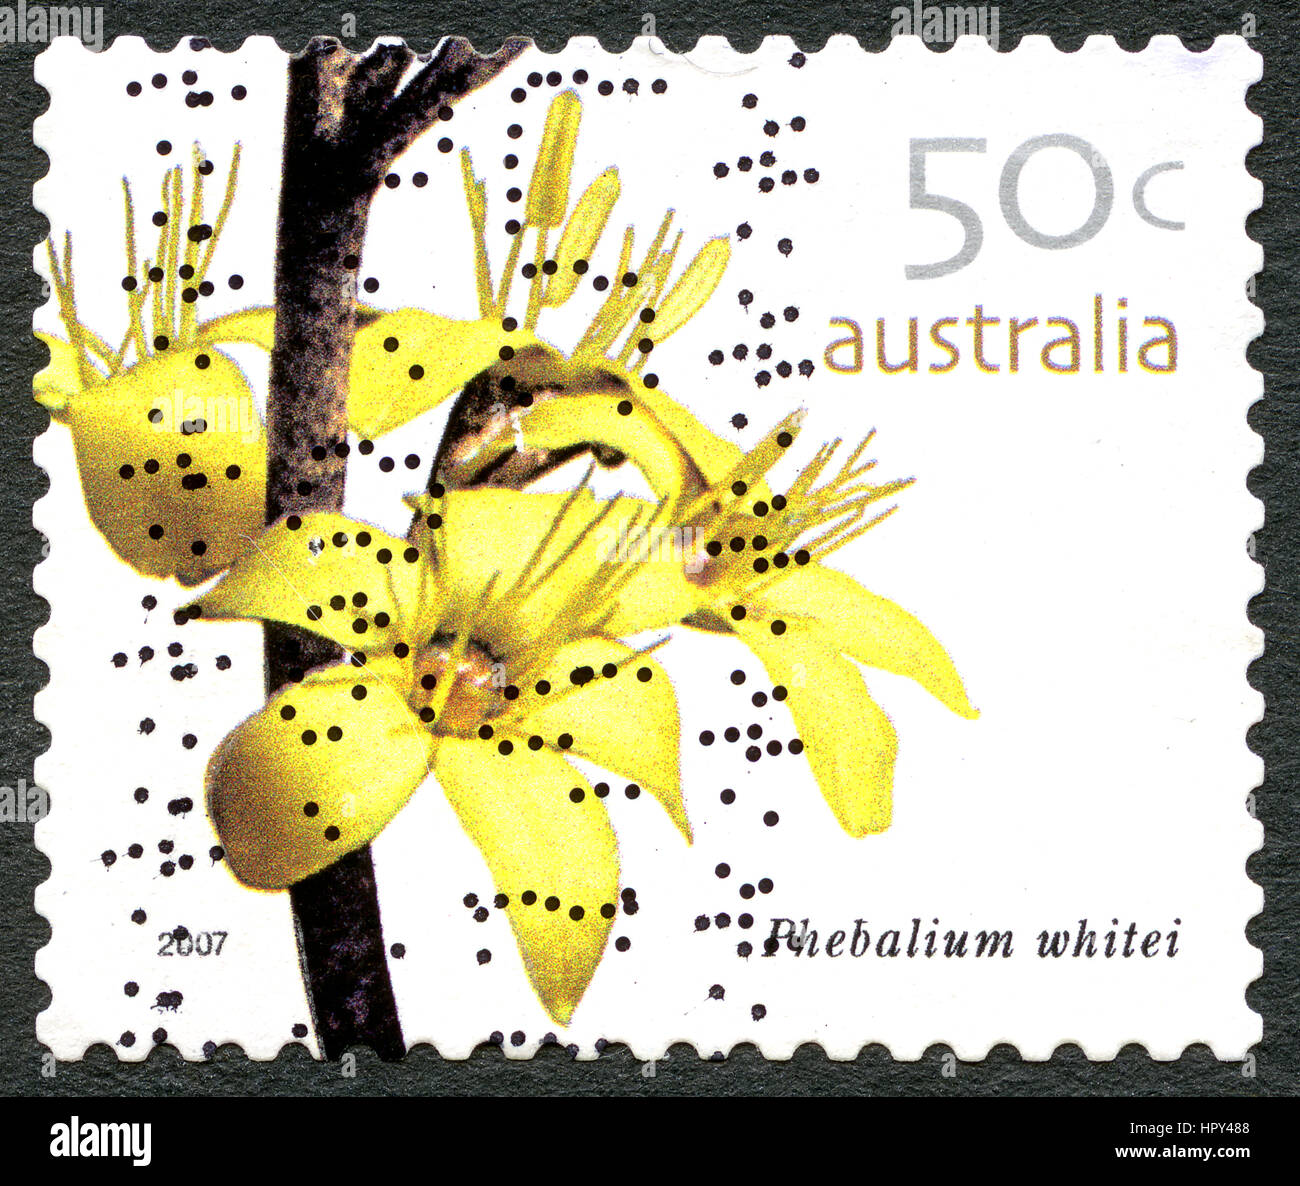 Australien - CIRCA 2005: Eine gebrauchte Briefmarke aus Australien, ein Bild einer Phebalium Whitei Blume, ca. 2005. Stockfoto